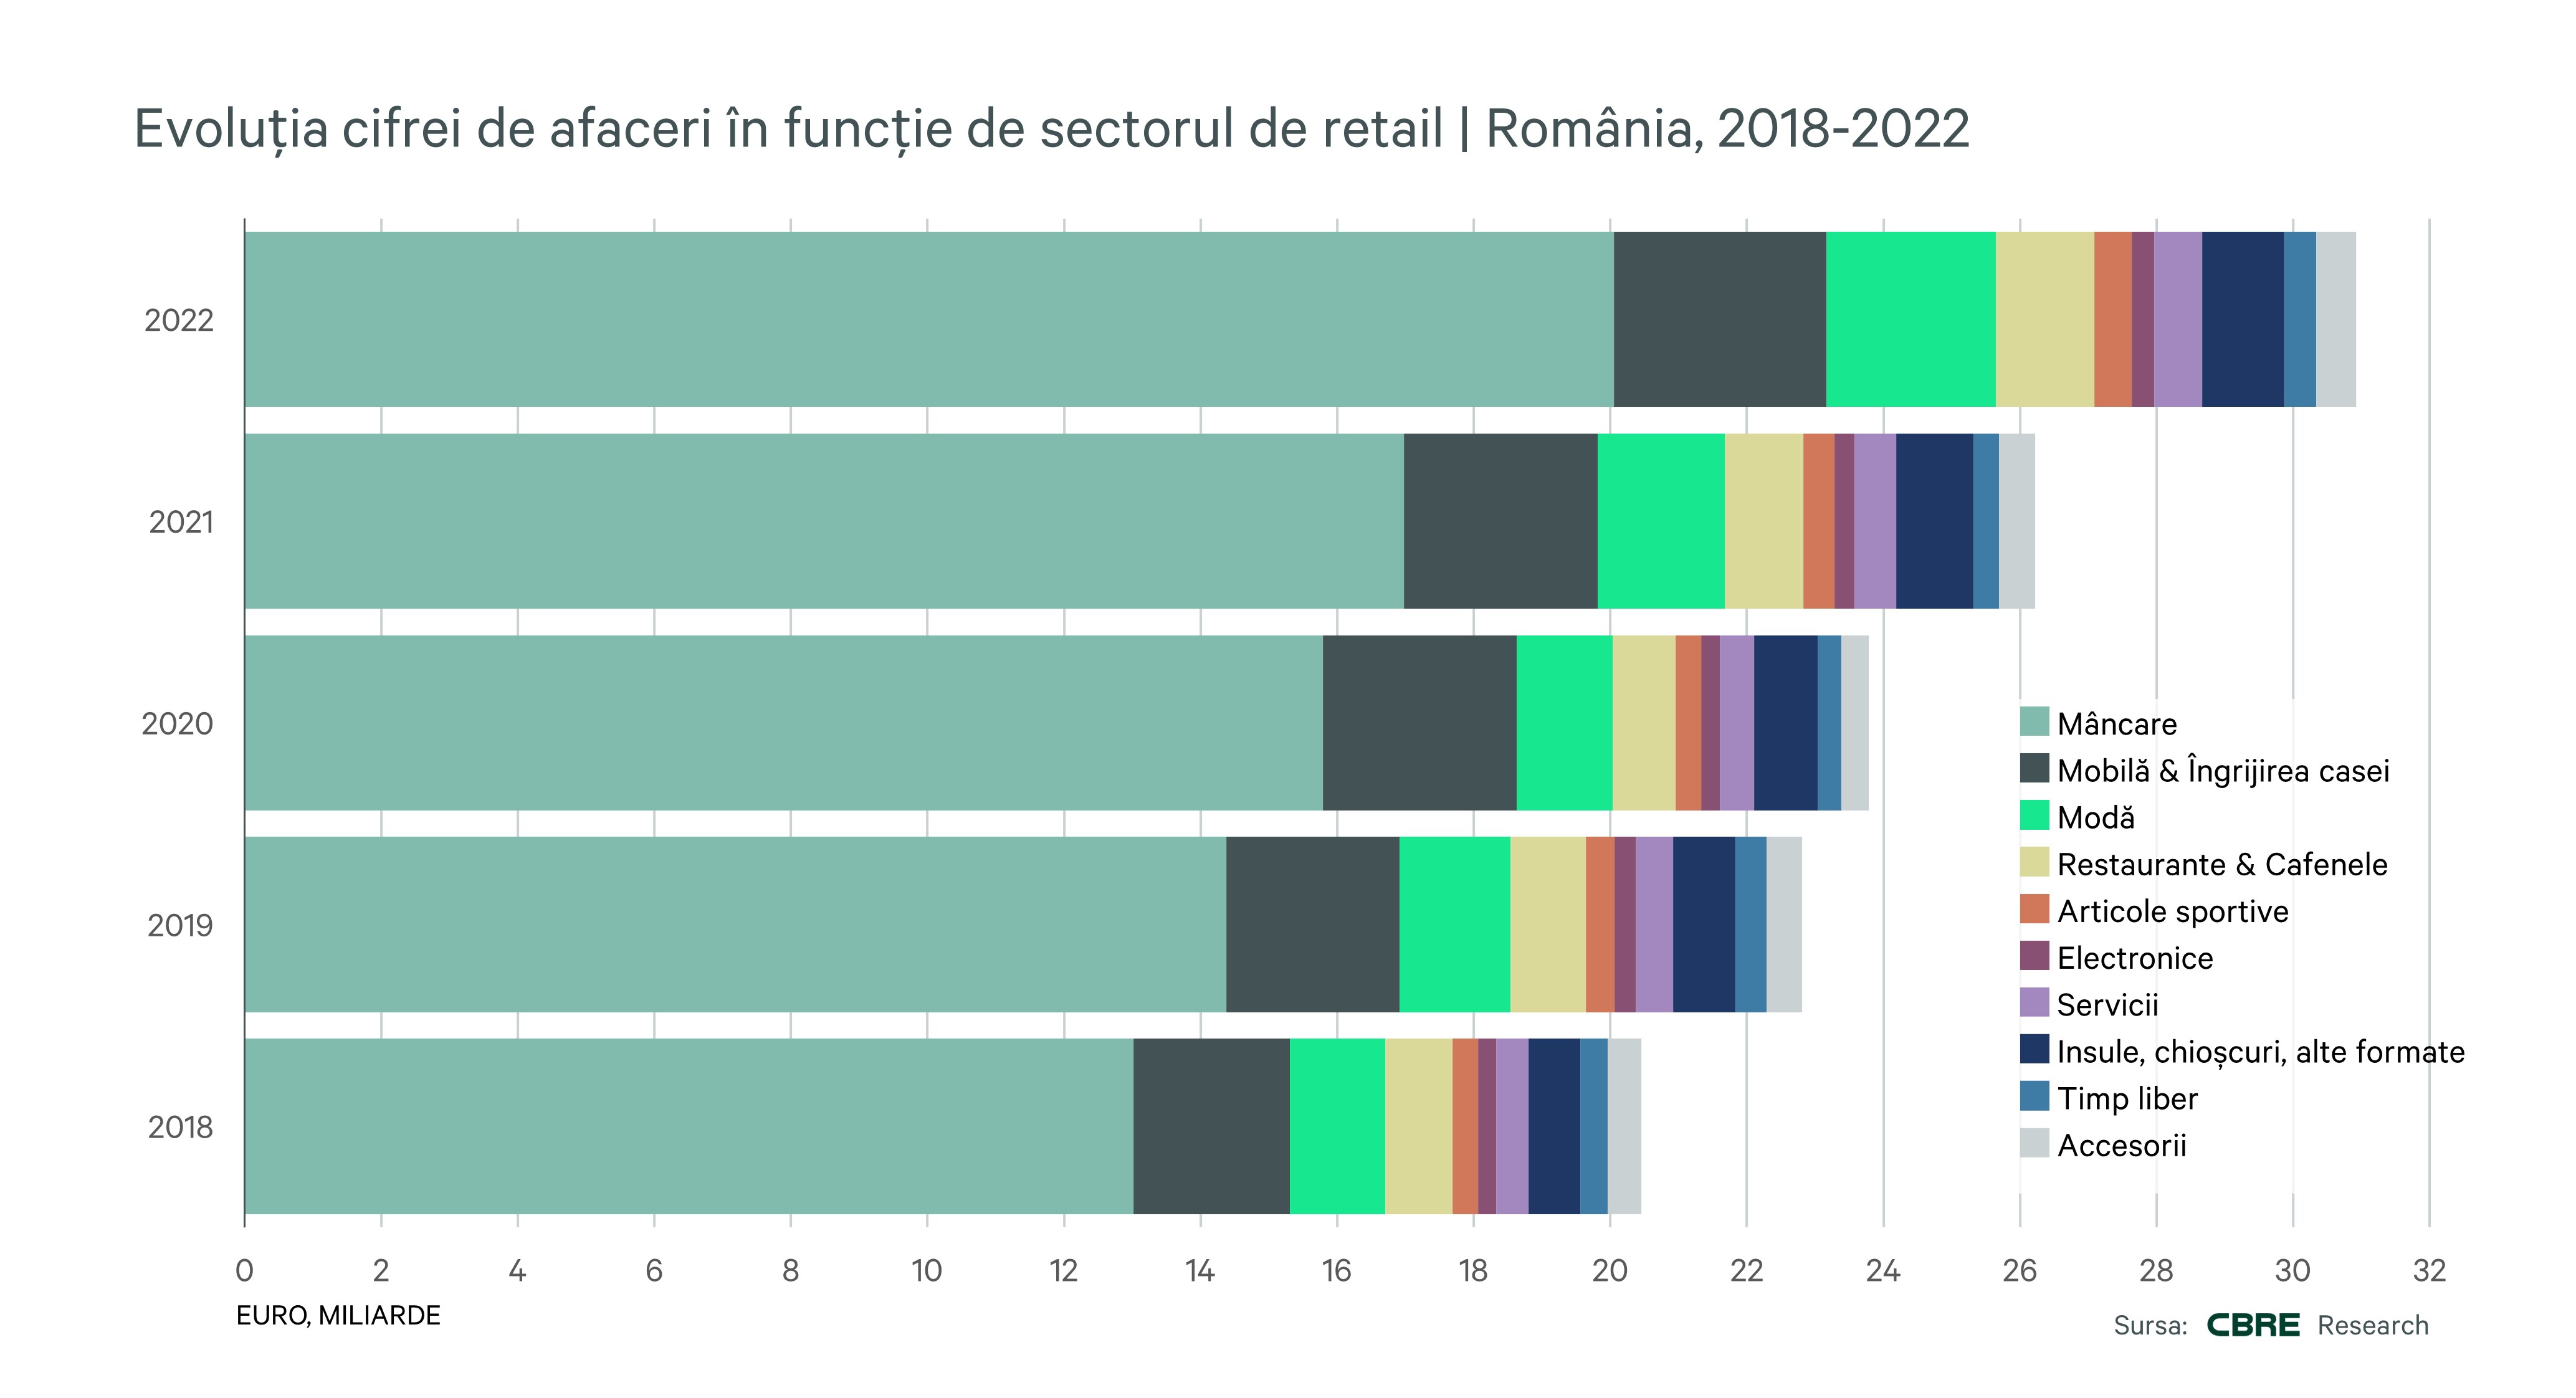 RO-Retail-Turnover-Evolution-2022-Sectors-CBRE-Romania